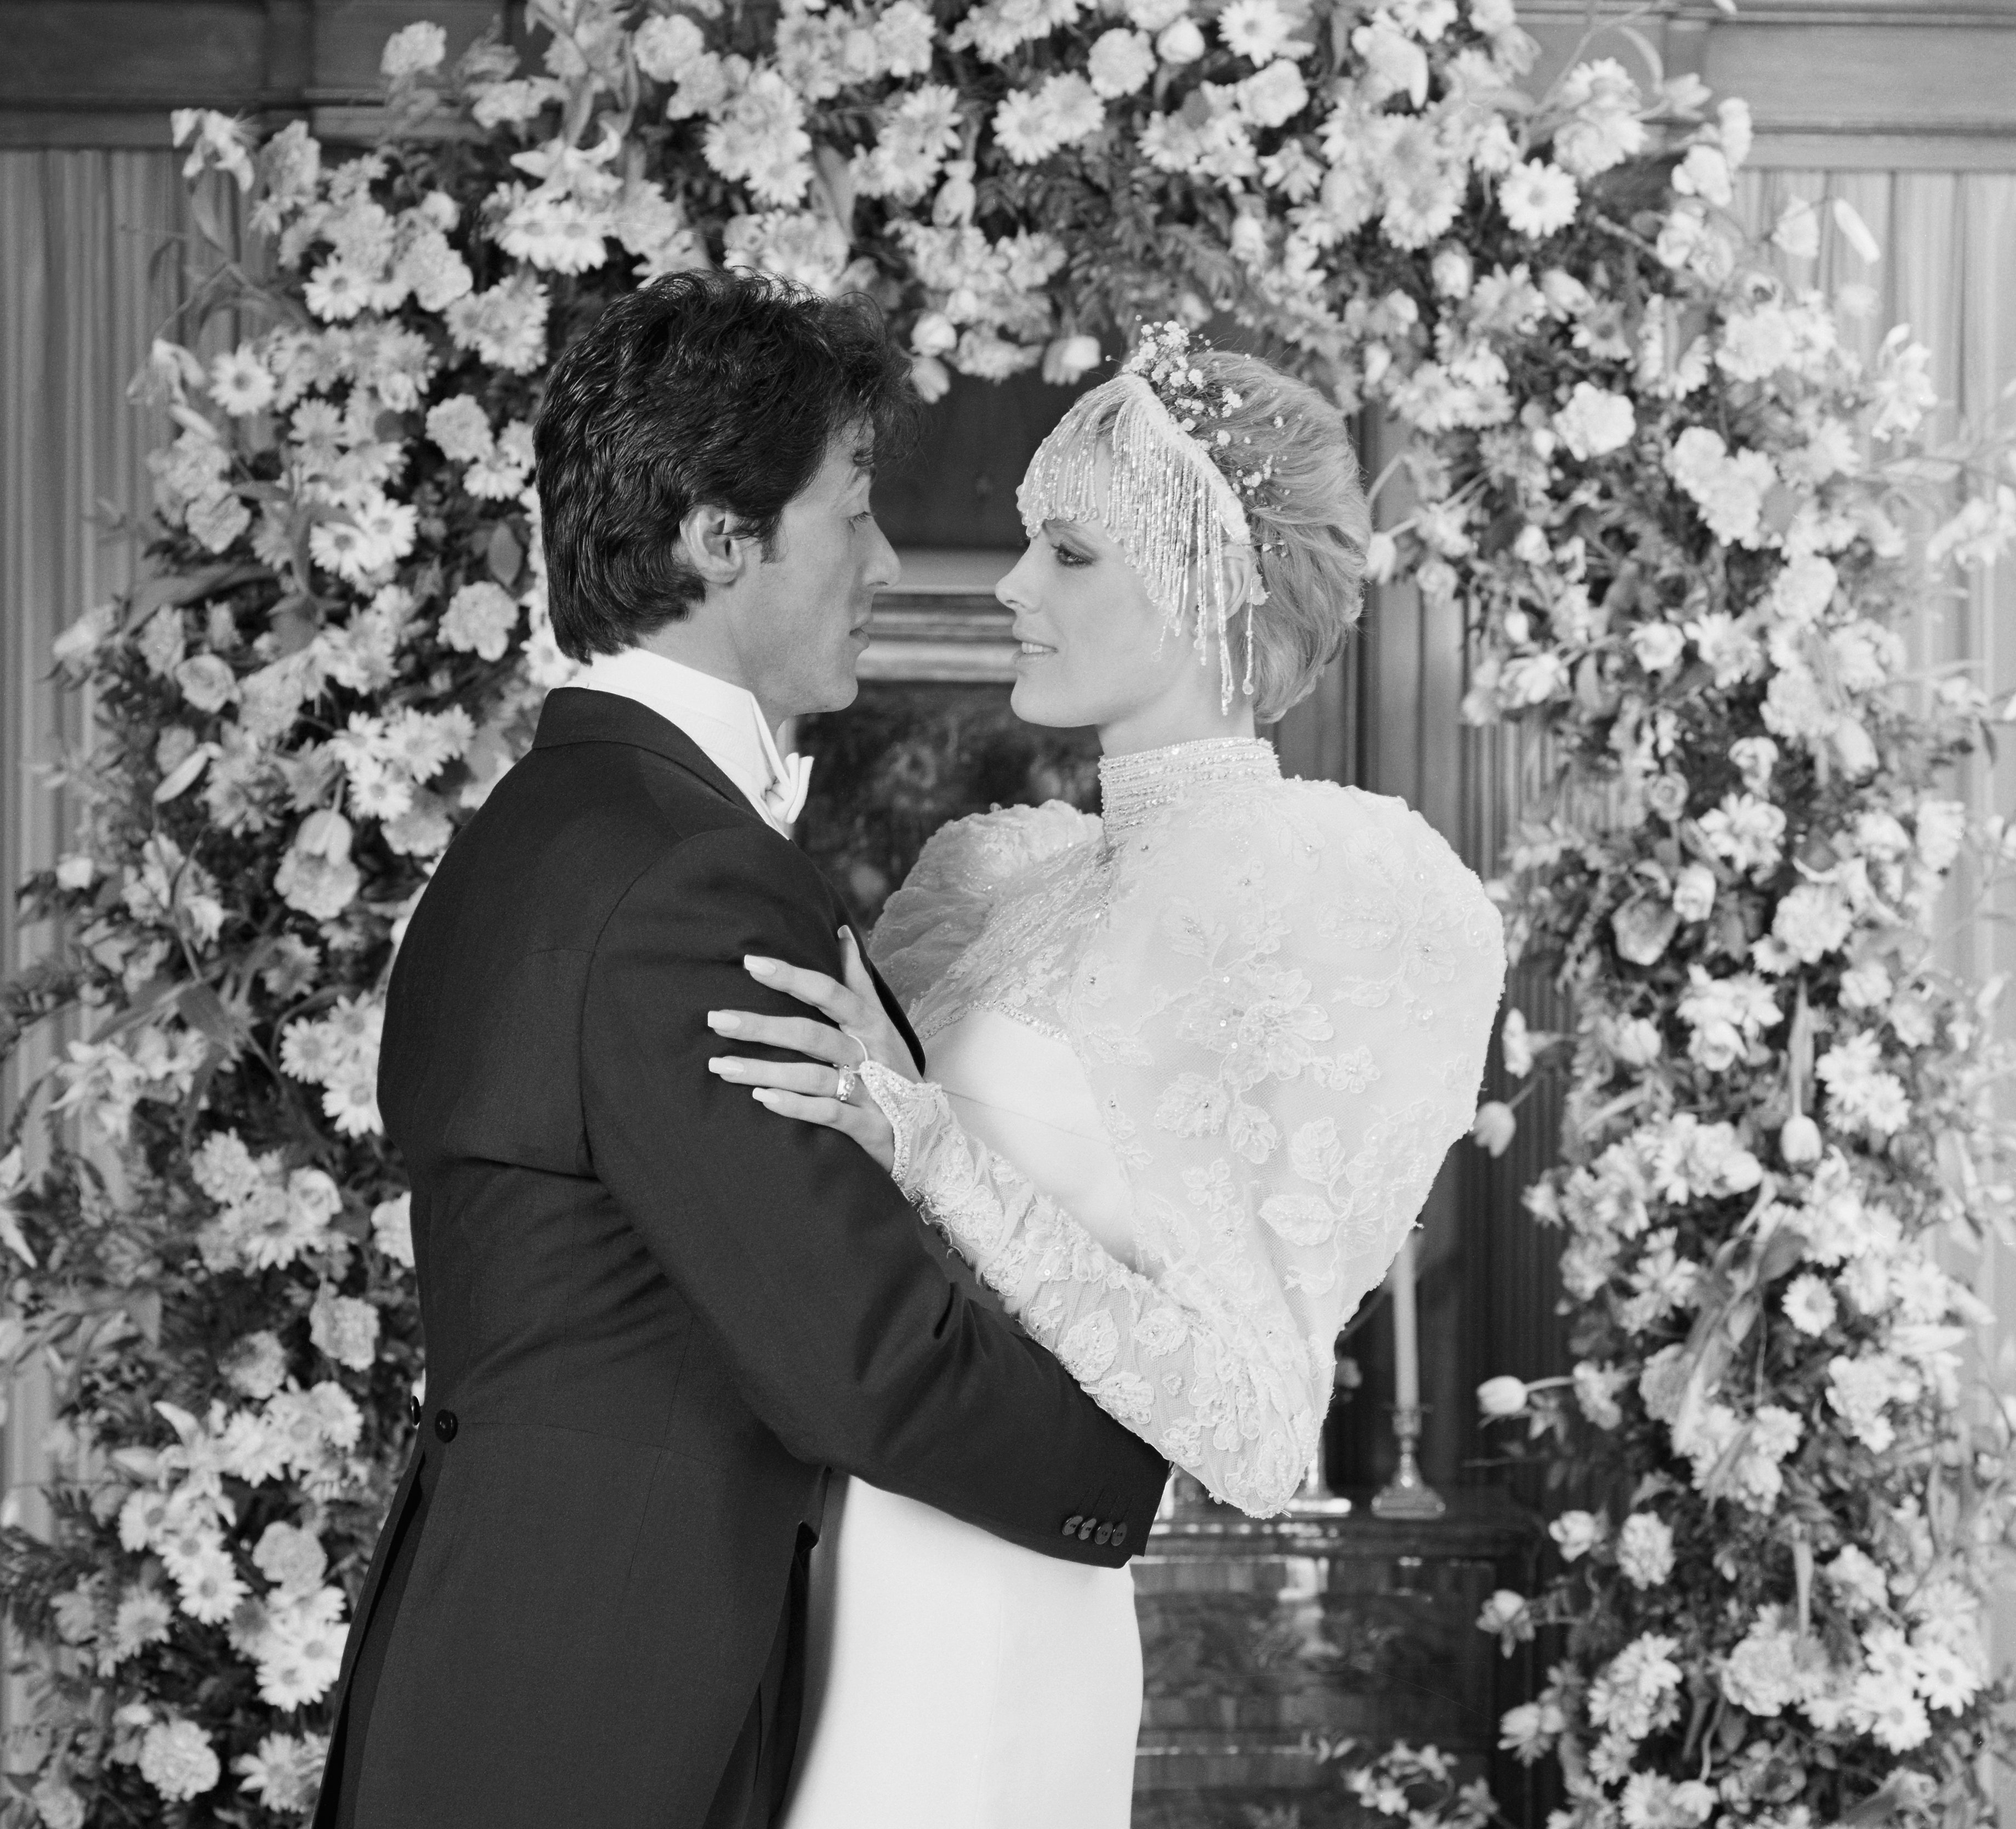 Sylvester Stallone y Brigitte Nielsen en su boda, el 16 de diciembre de 1985. | Foto: Getty Images